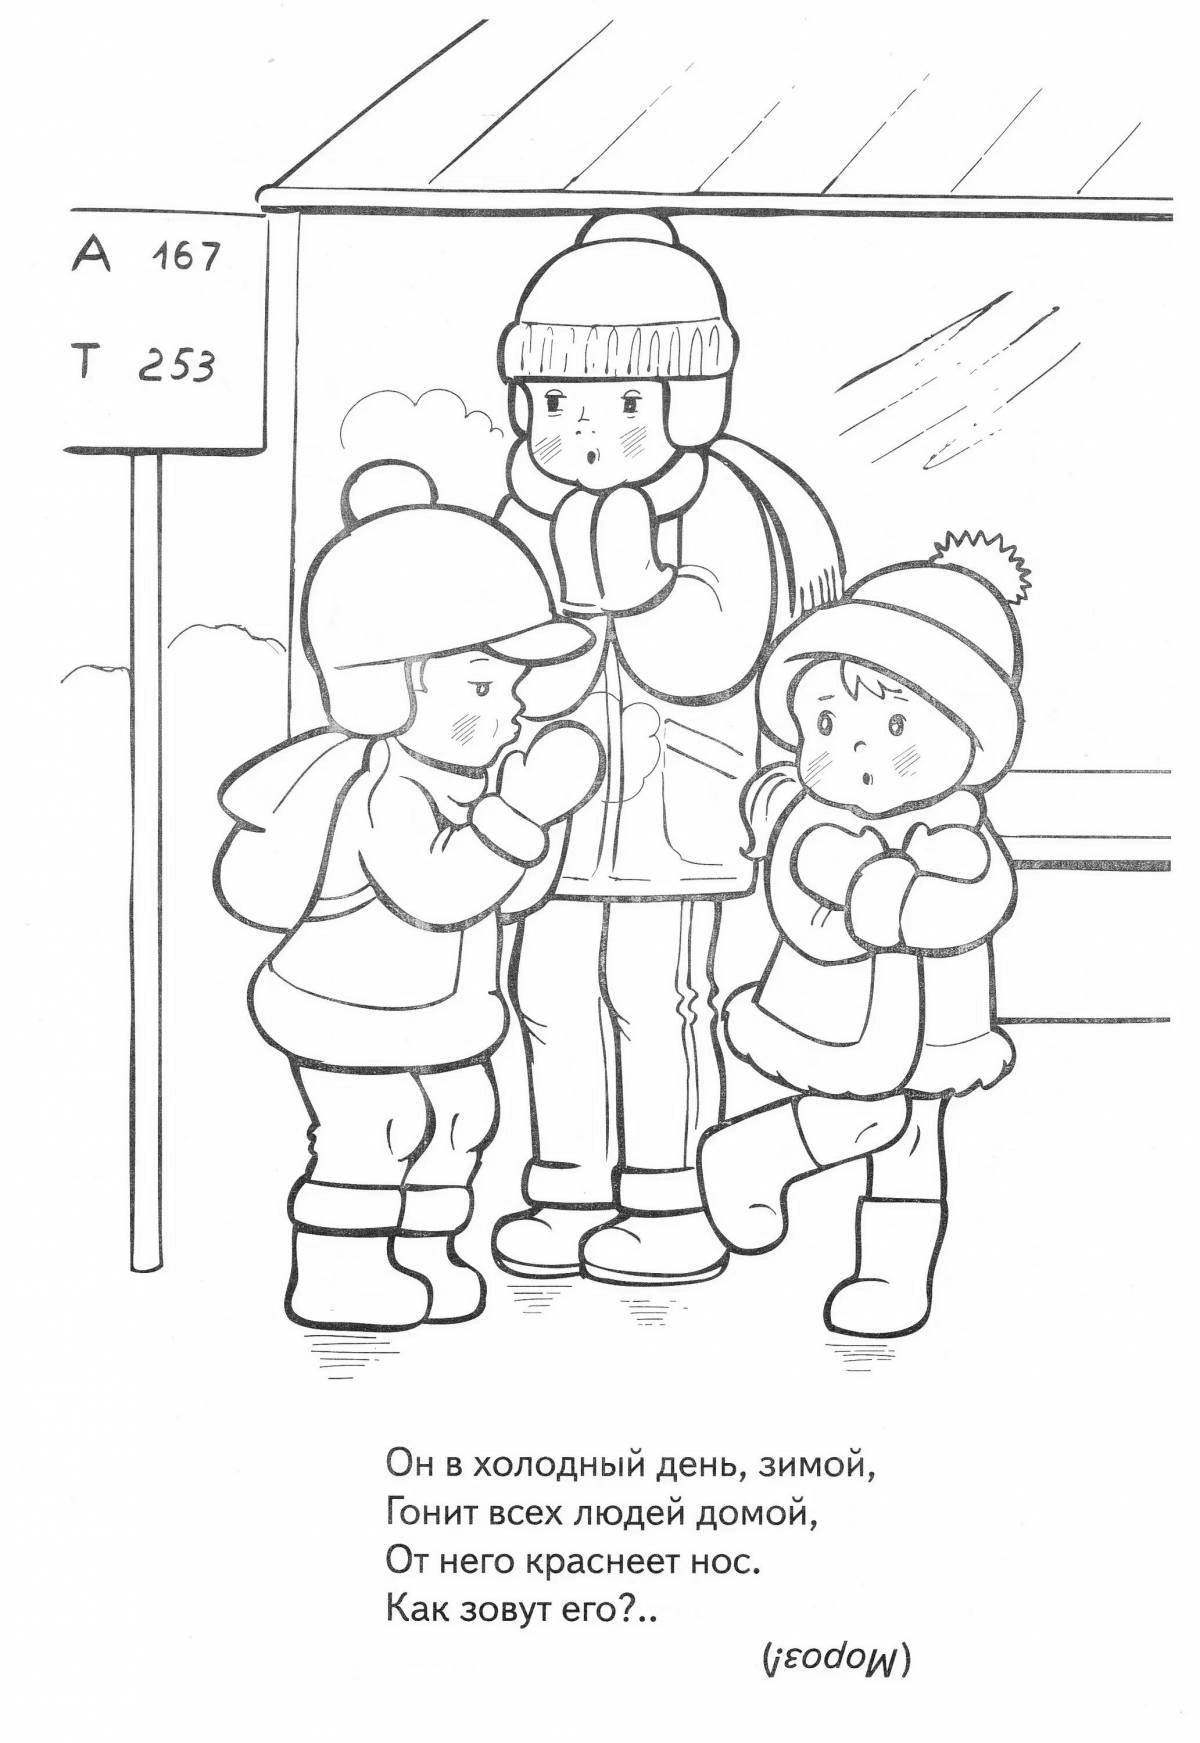 Children's winter hazards #15